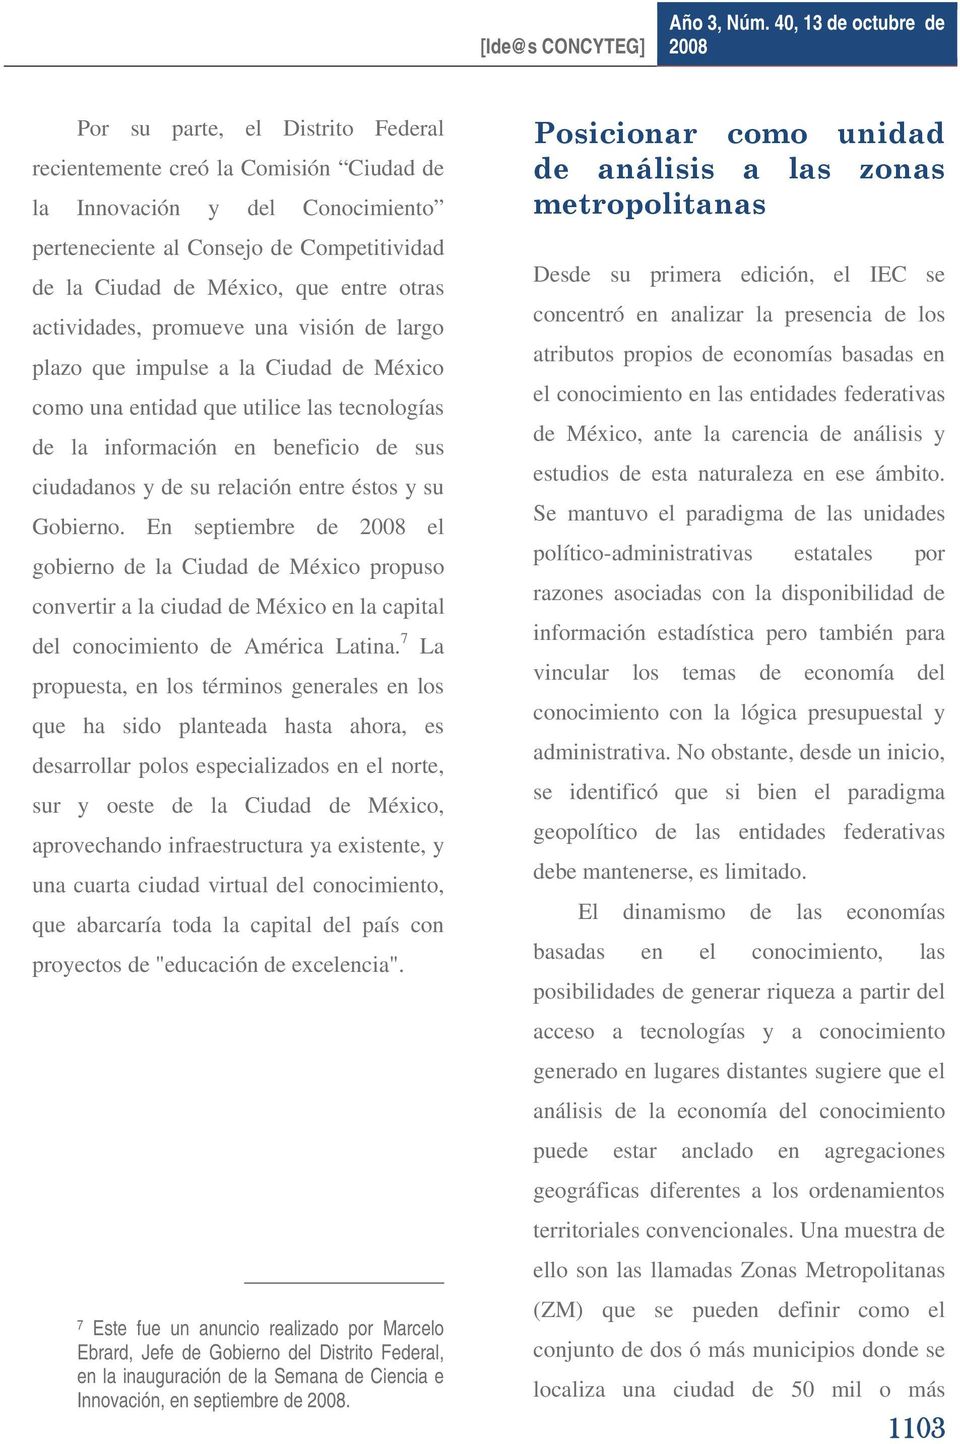 éstos y su Gobierno. En septiembre de el gobierno de la Ciudad de México propuso convertir a la ciudad de México en la capital del conocimiento de América Latina.